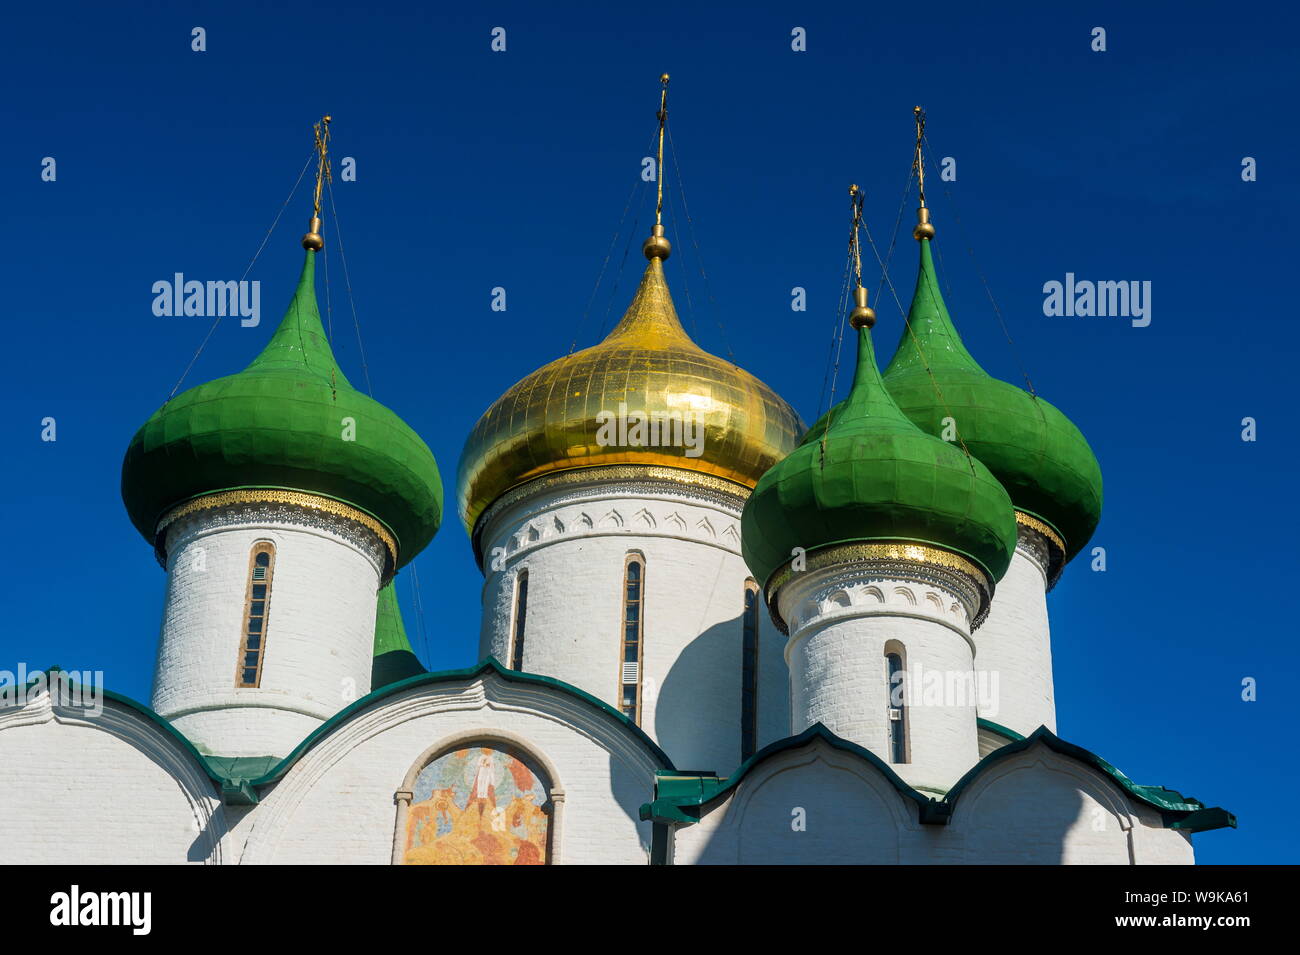 Cathédrale de la Transfiguration du Sauveur dans le Kremlin, UNESCO World Heritage Site, Suzdal, anneau d'Or, la Russie, l'Europe Banque D'Images